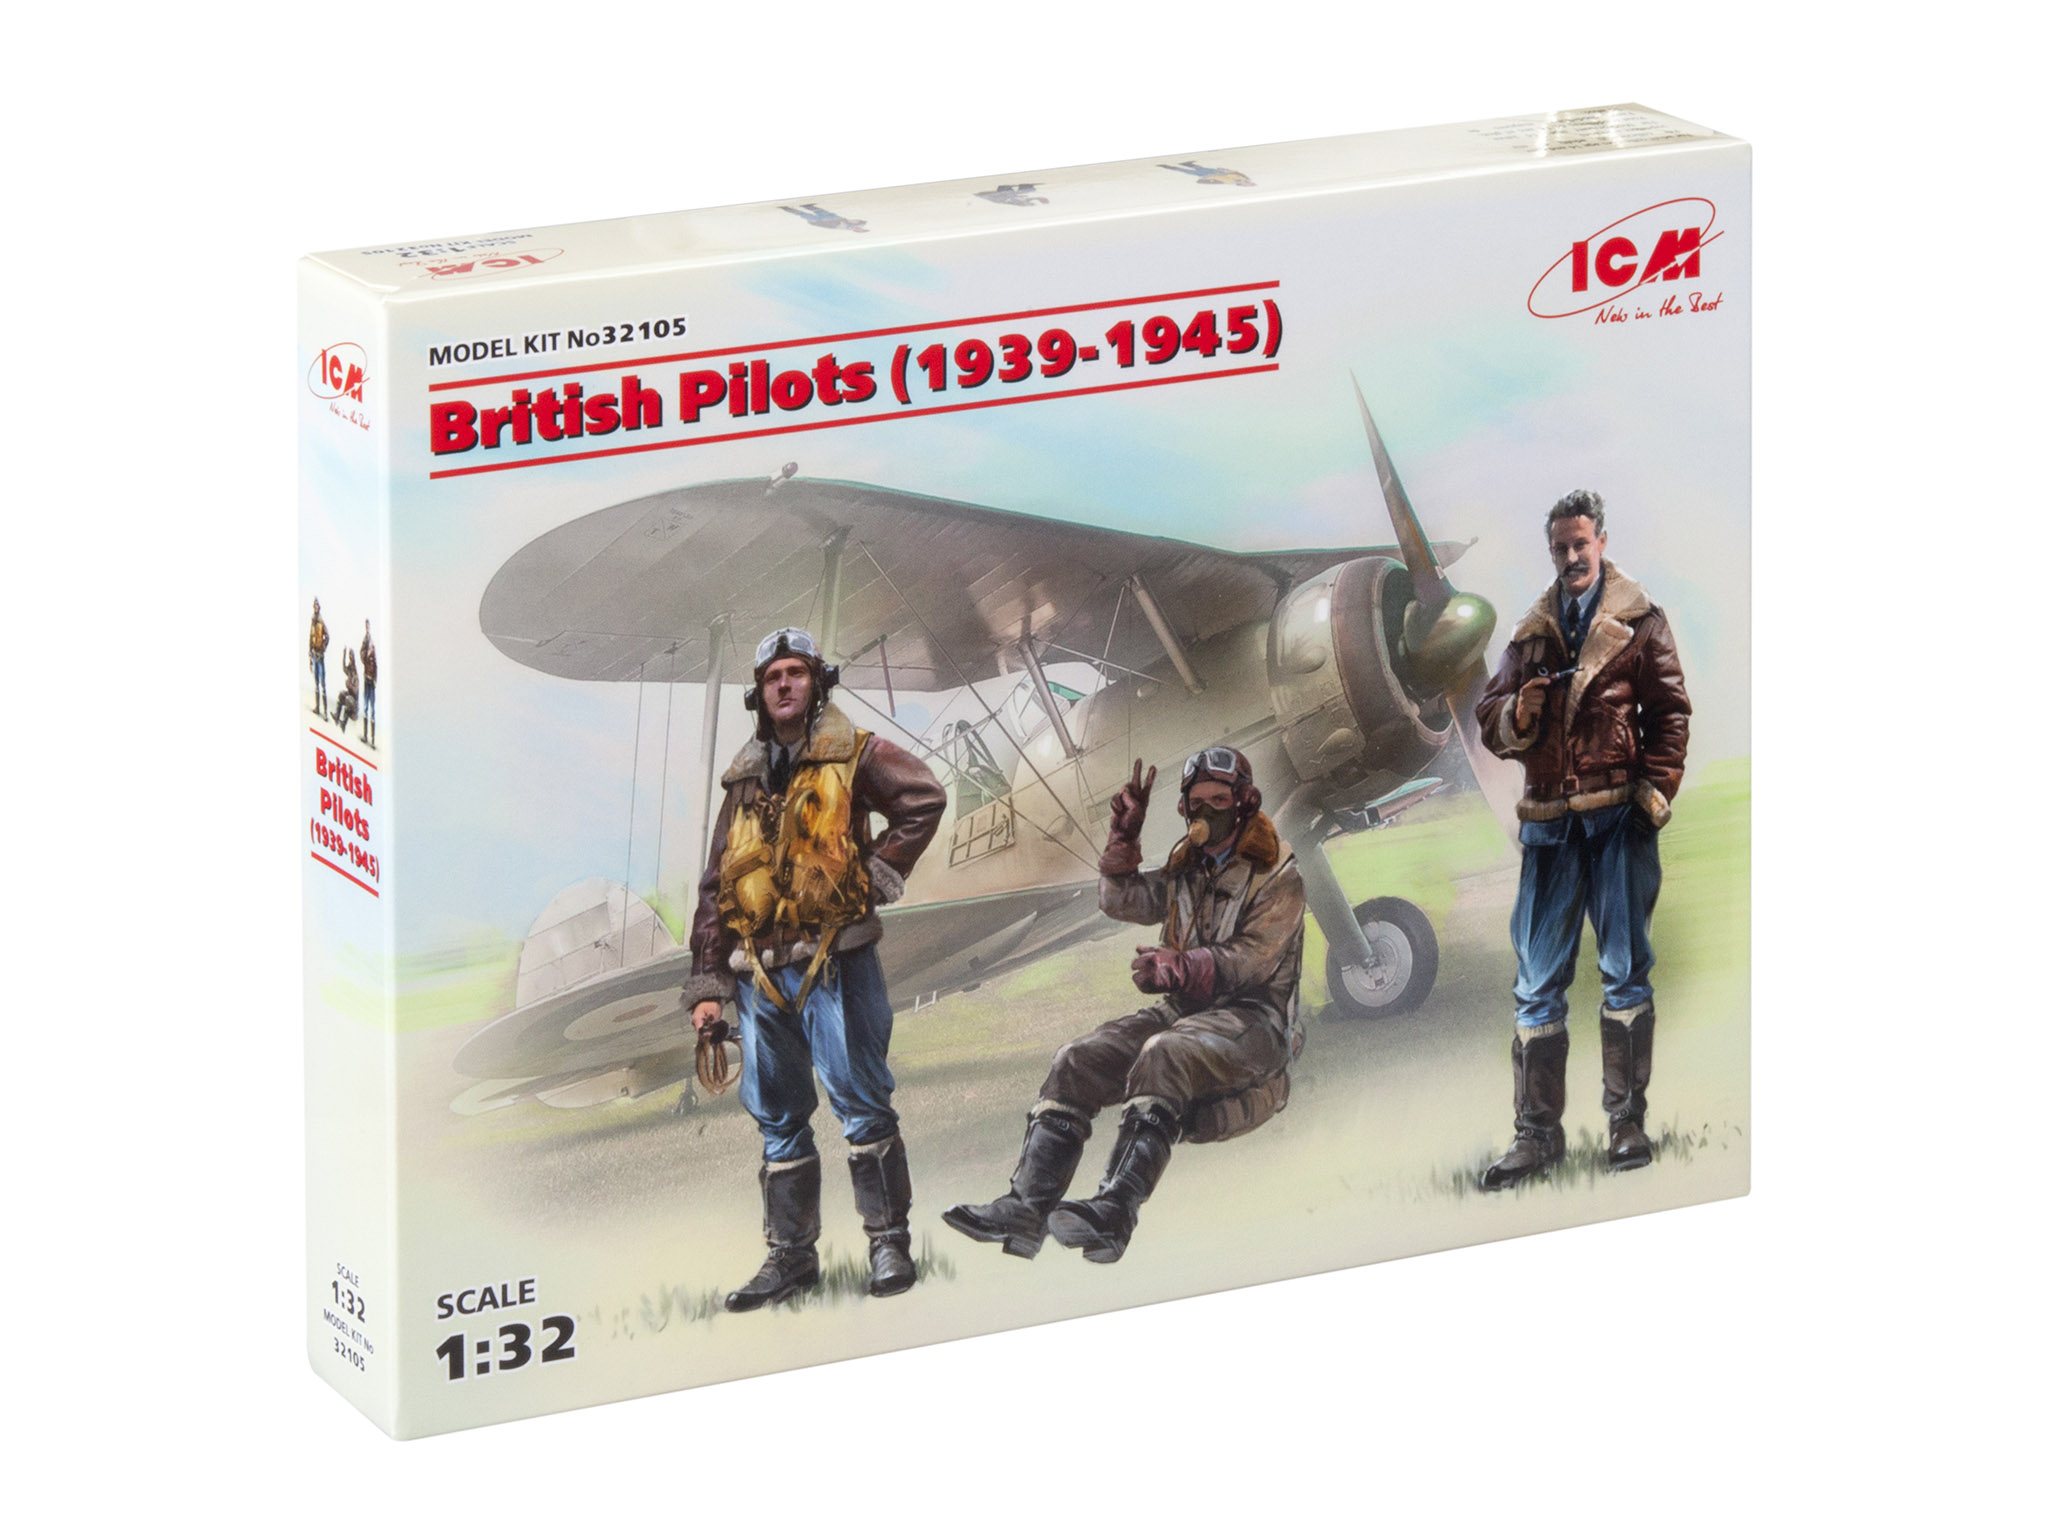 3 figures 1939-1945 ICM 32105-1/32 British Pilots 